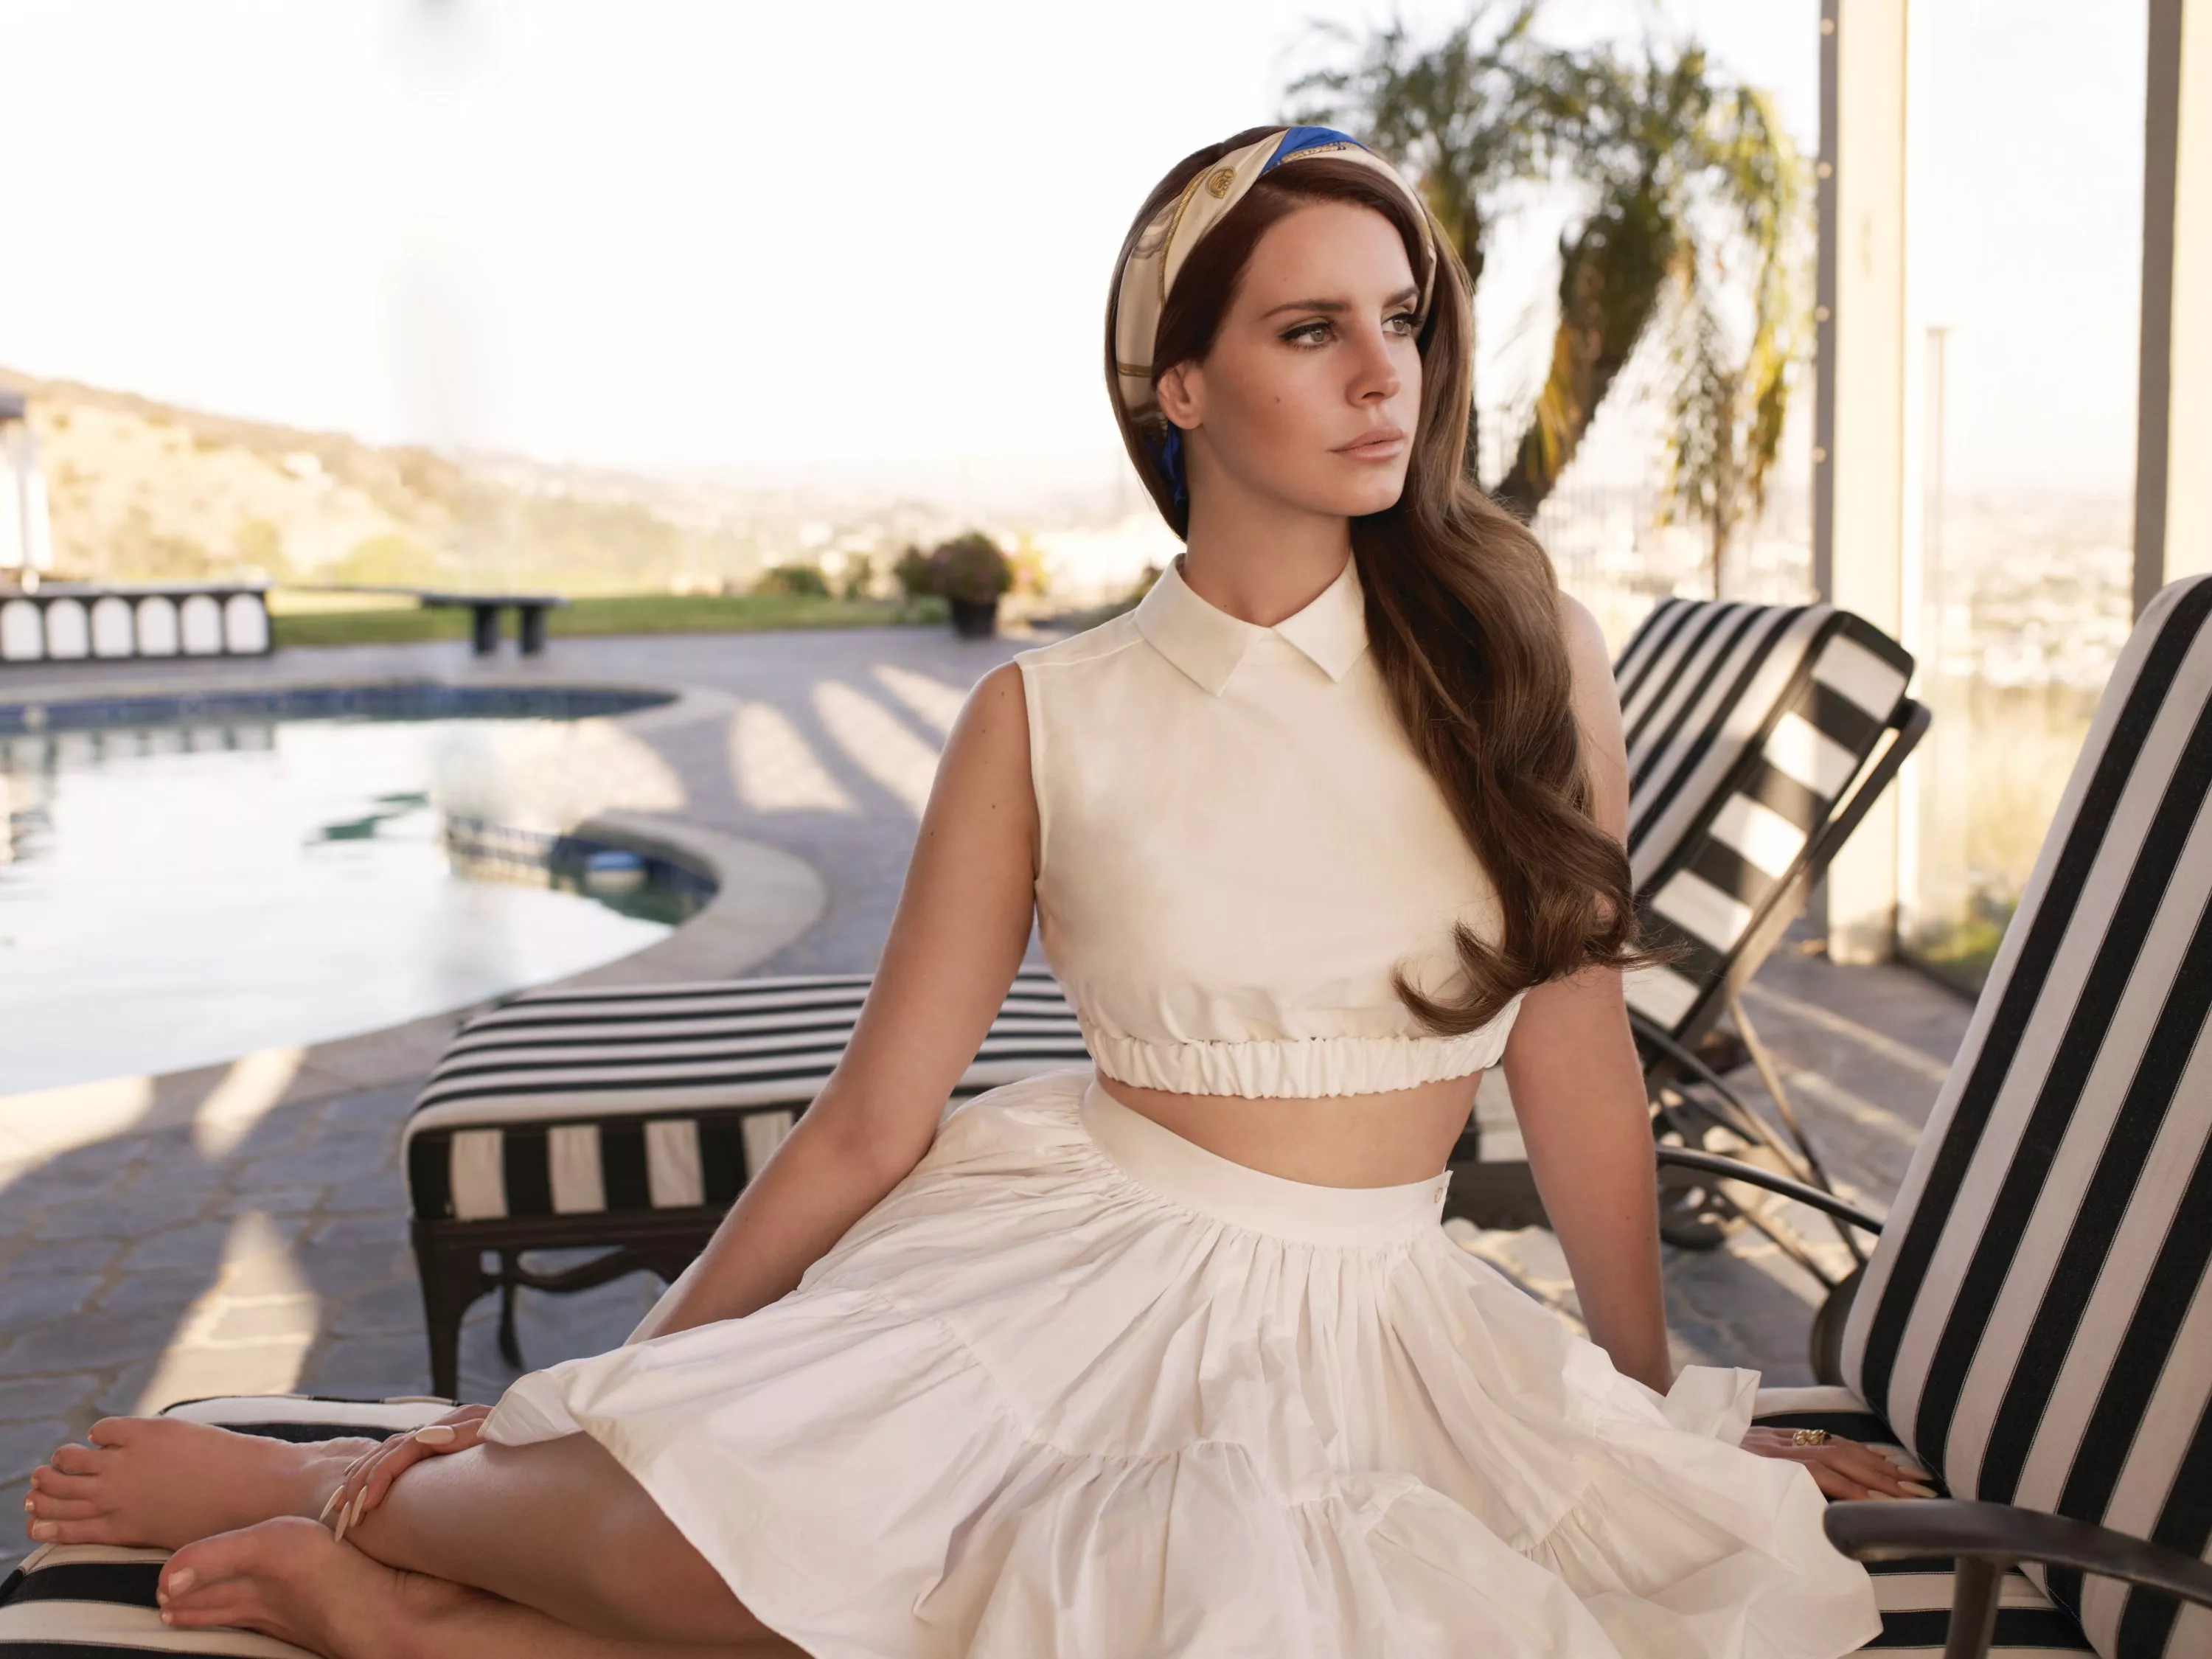 Hør: Lana Del Rey i voldsomt forhold